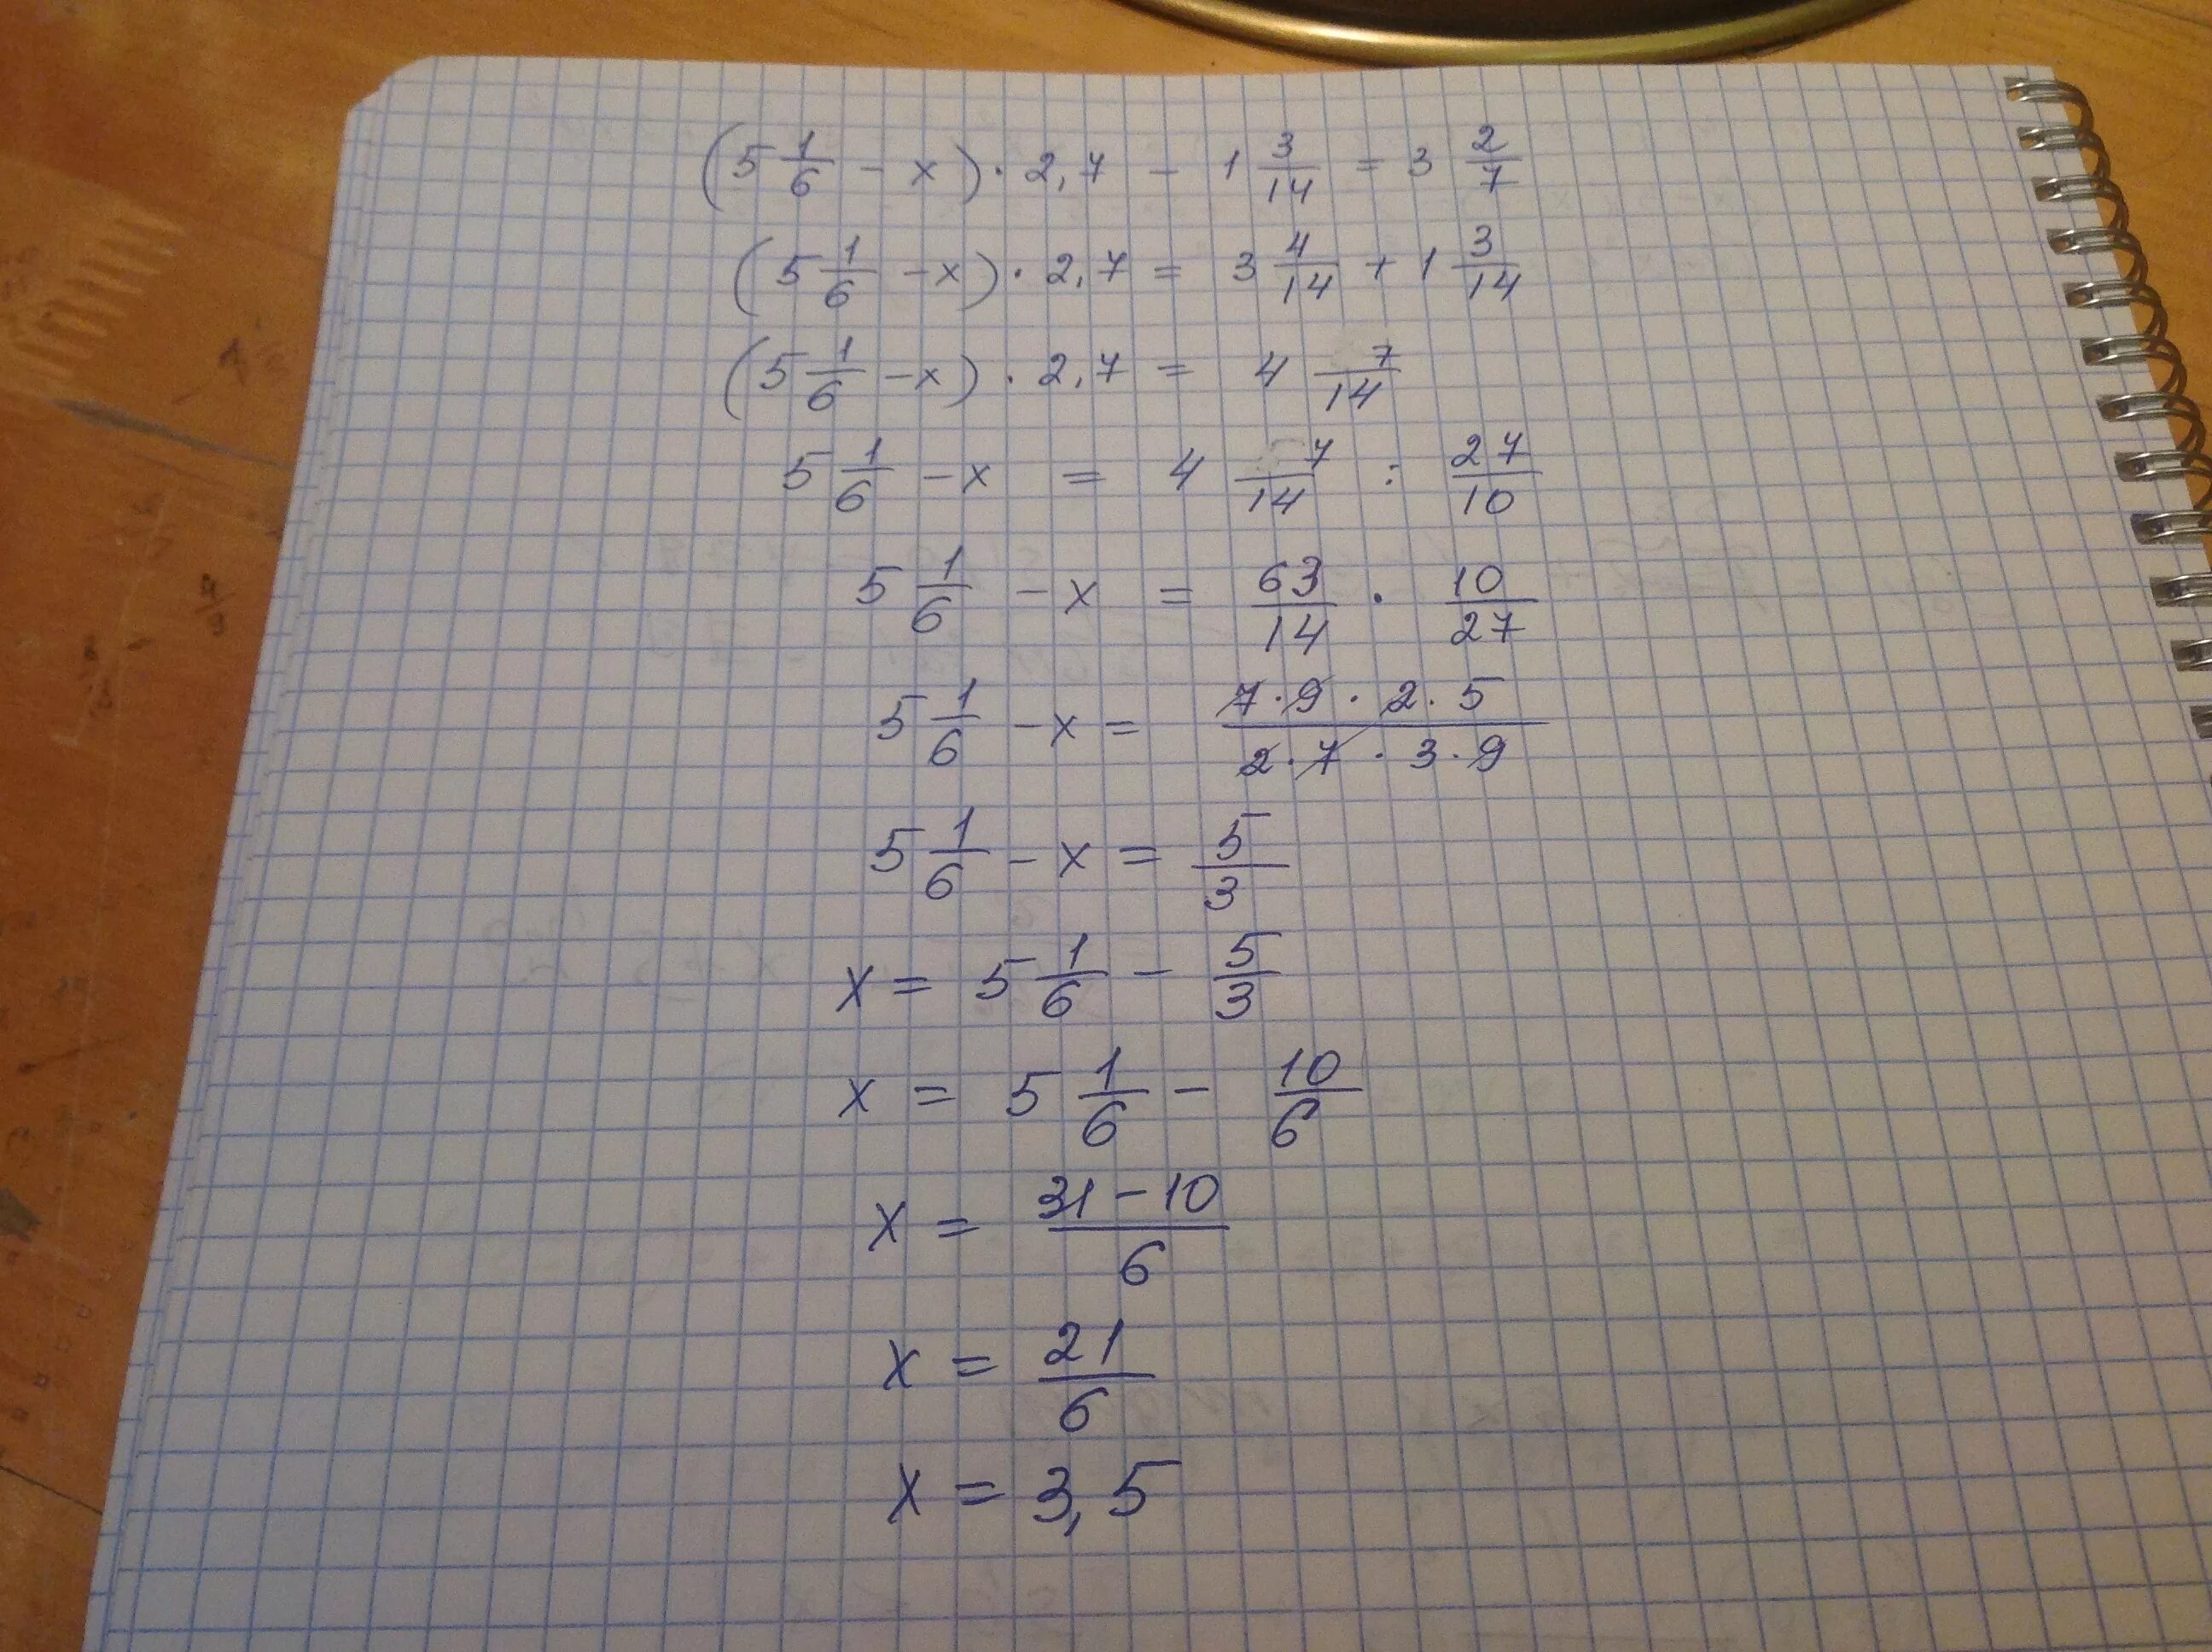 3x 5 6 x 3 решение. 2/X-3=7/X+1. X-2/3=3x+1/7. 3,5/√1-X=1 1/6. 5-2(1-Х)=7x+6.